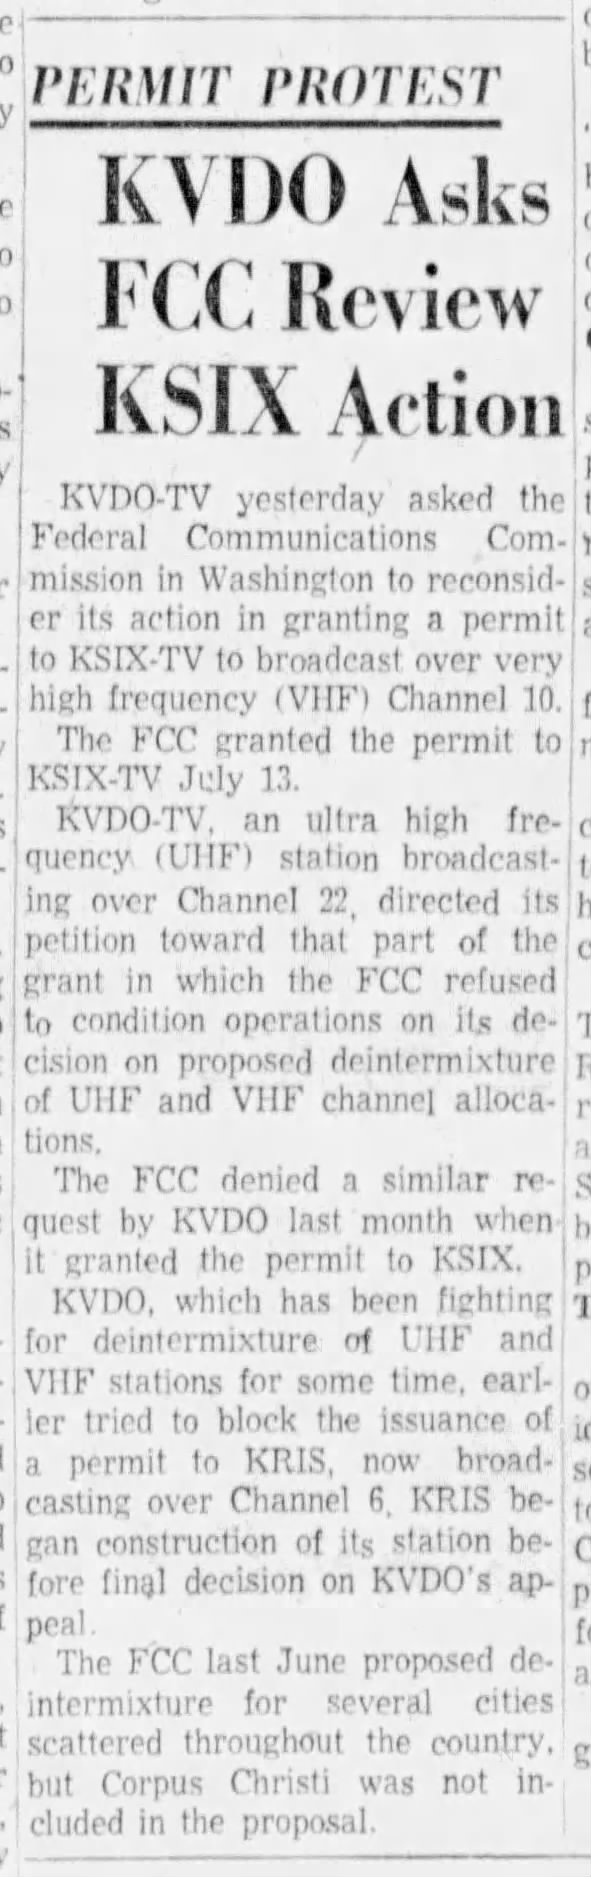 Permit Protest: KVDO Asks FCC Review KSIX Action